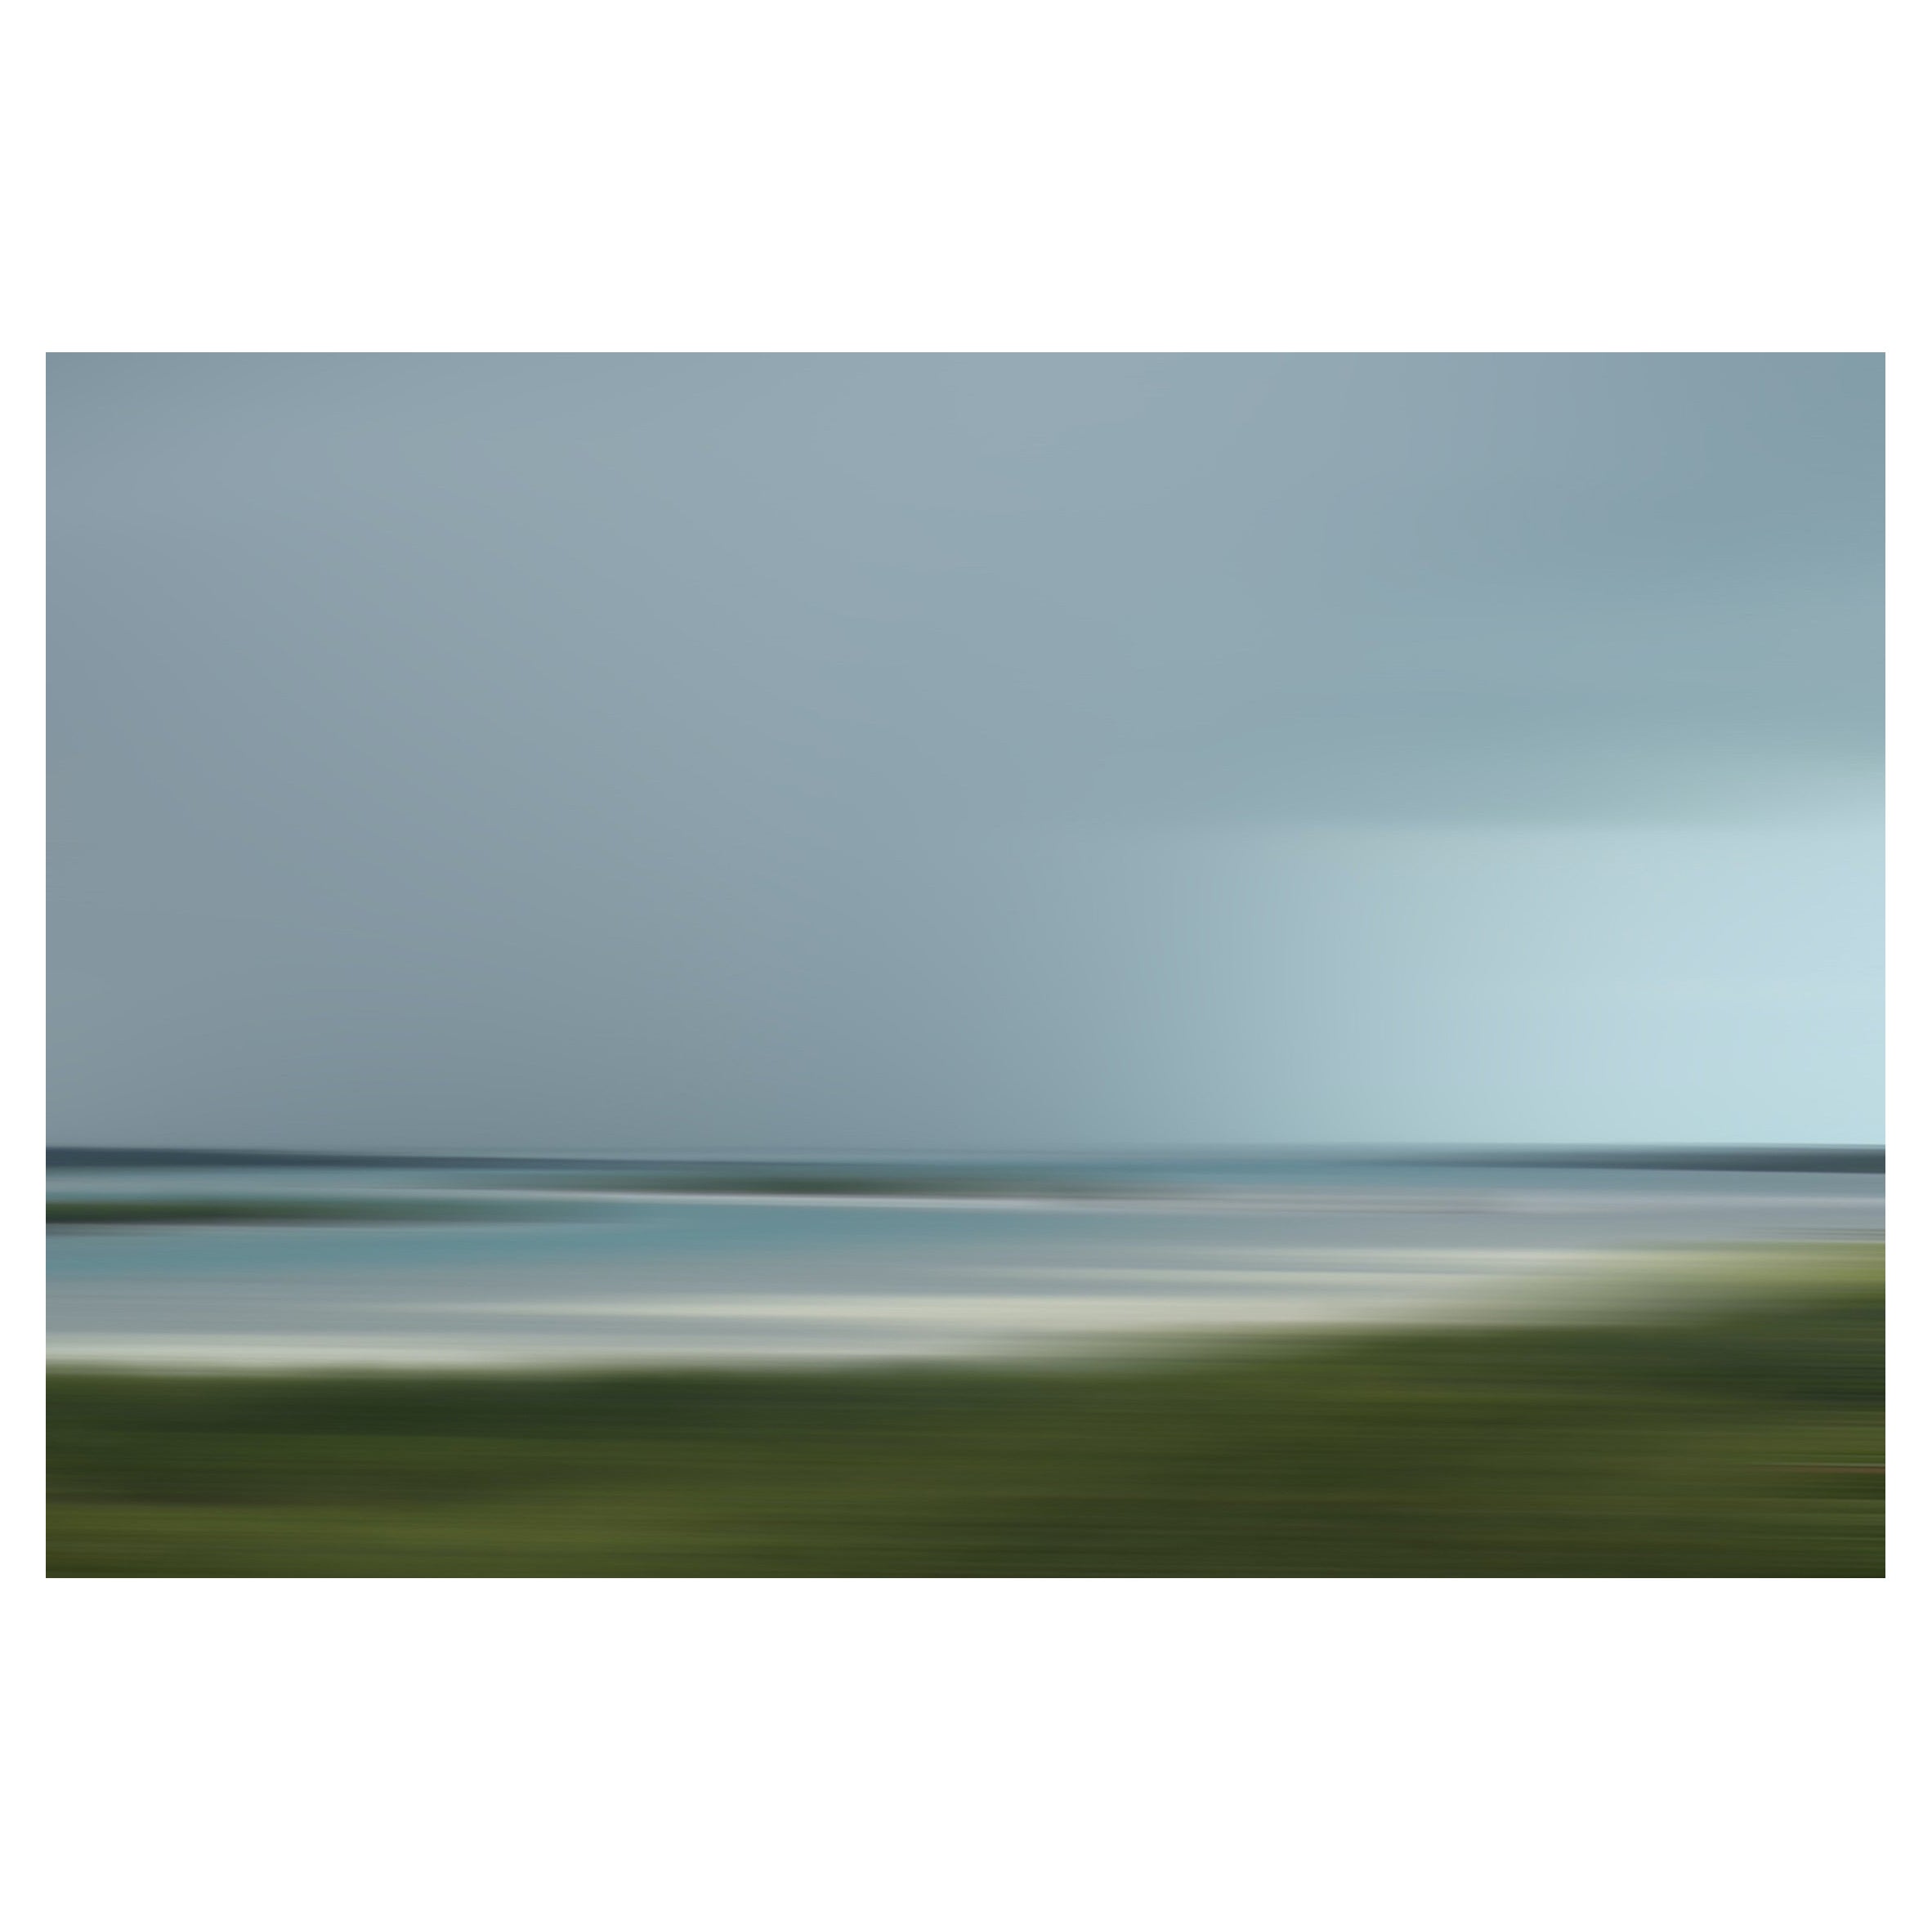 Bonnie Edelman "Lagoon Storm, T&C" Photograph, Scapes Series, 2016